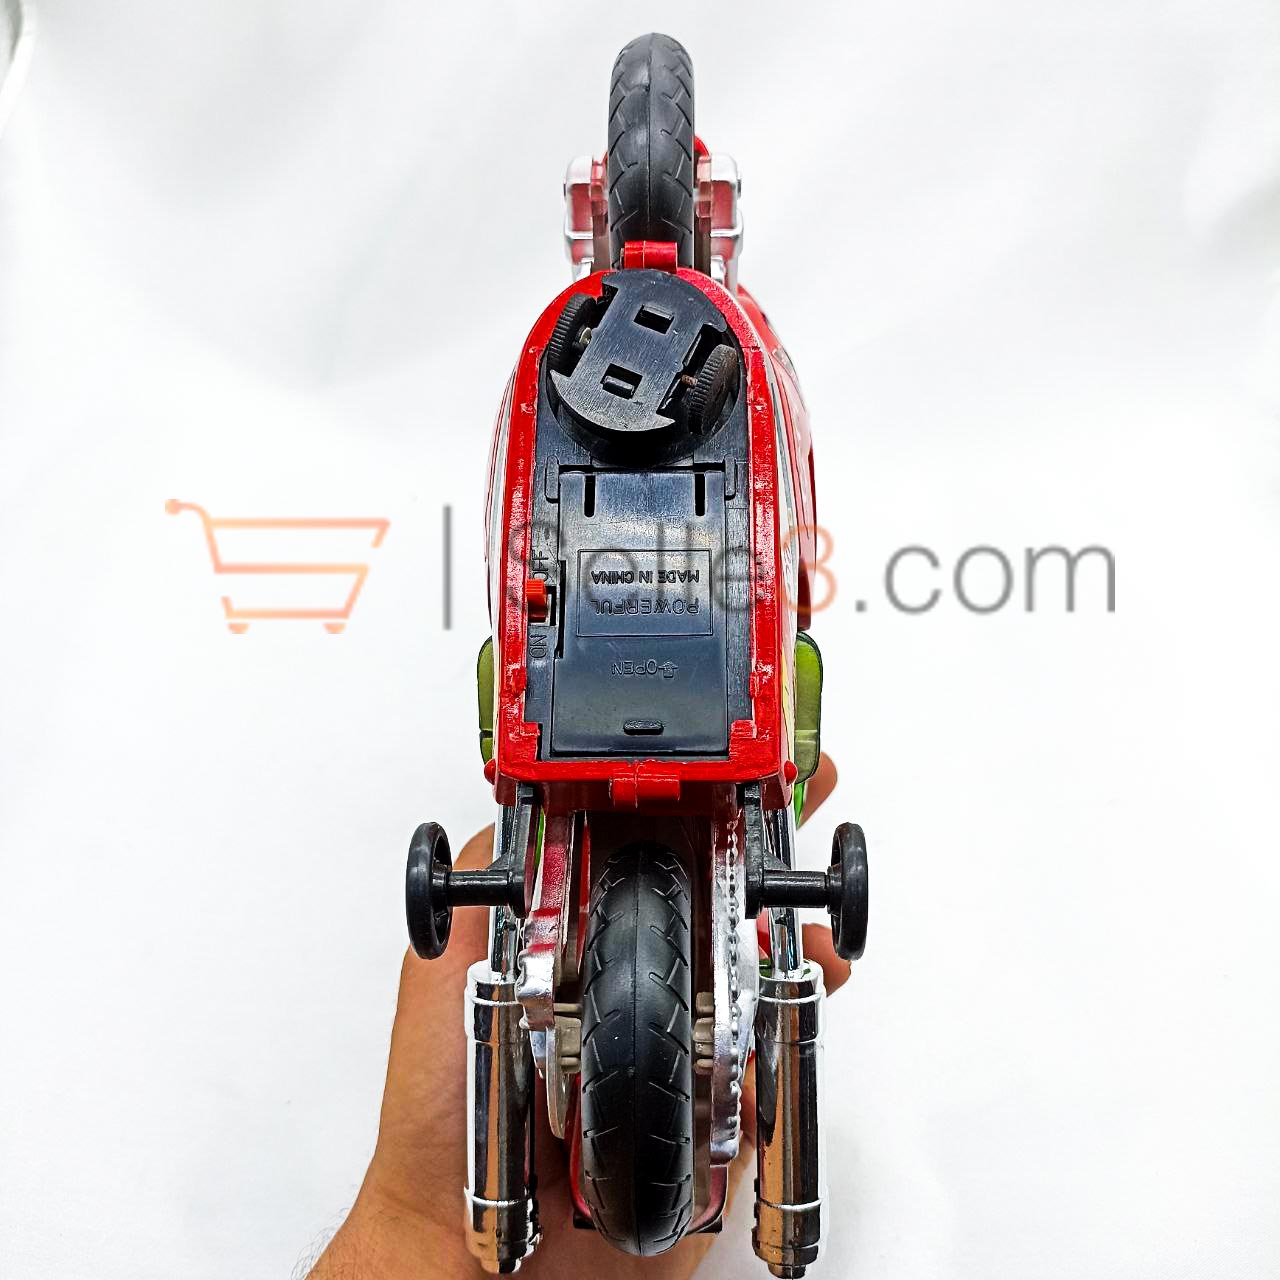 دراجة نارية Moto Model Toy